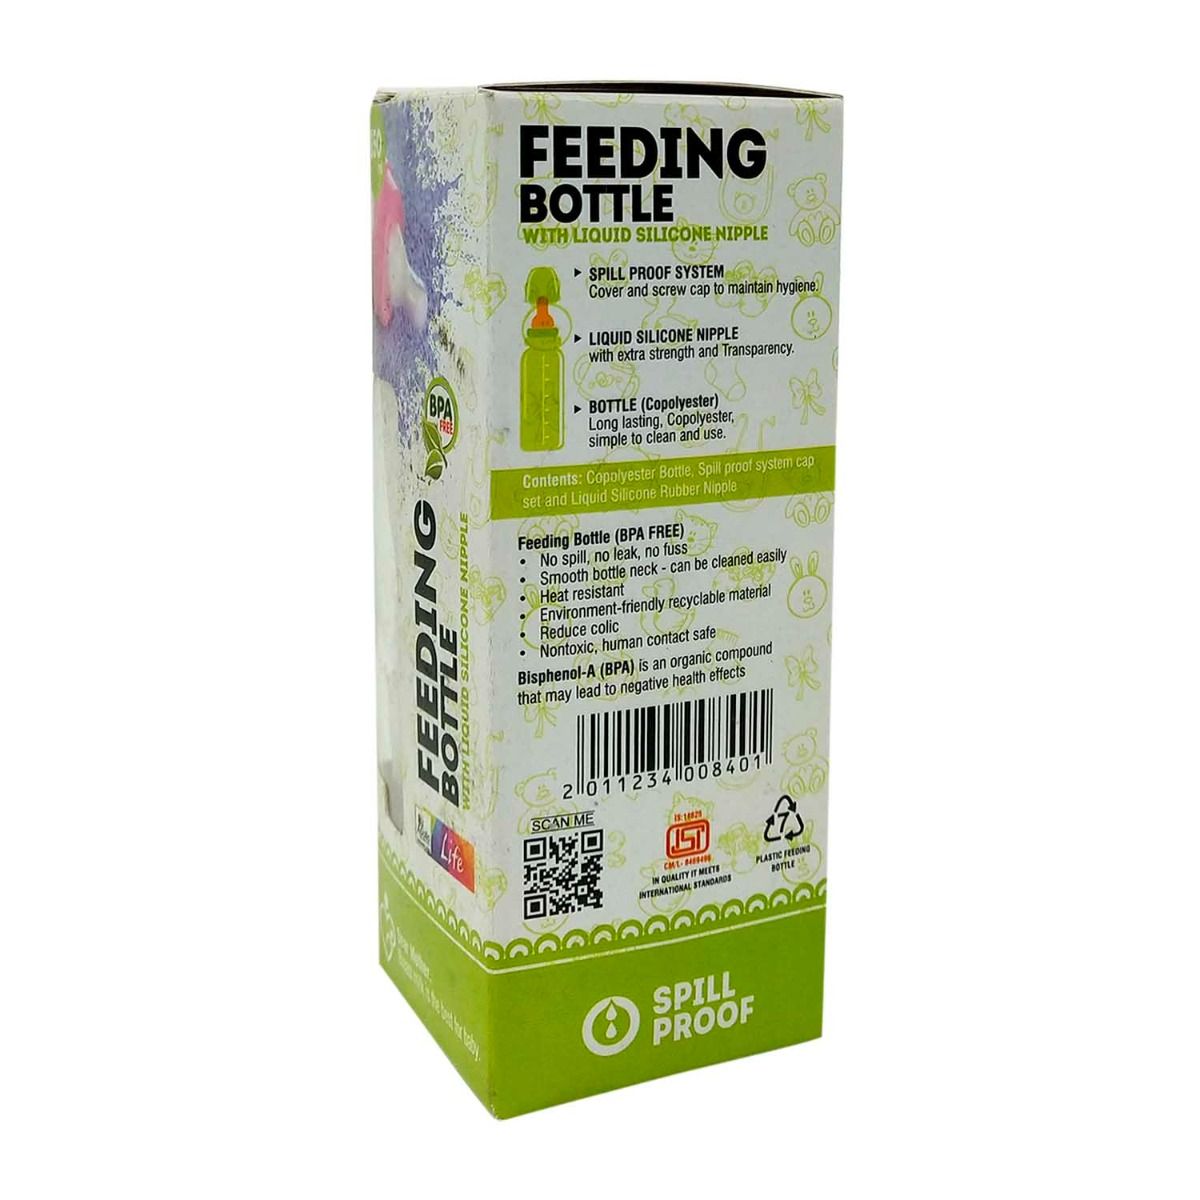 Apollo Pharmacy Feeding Bottle, 150 ml, Pack of 1 